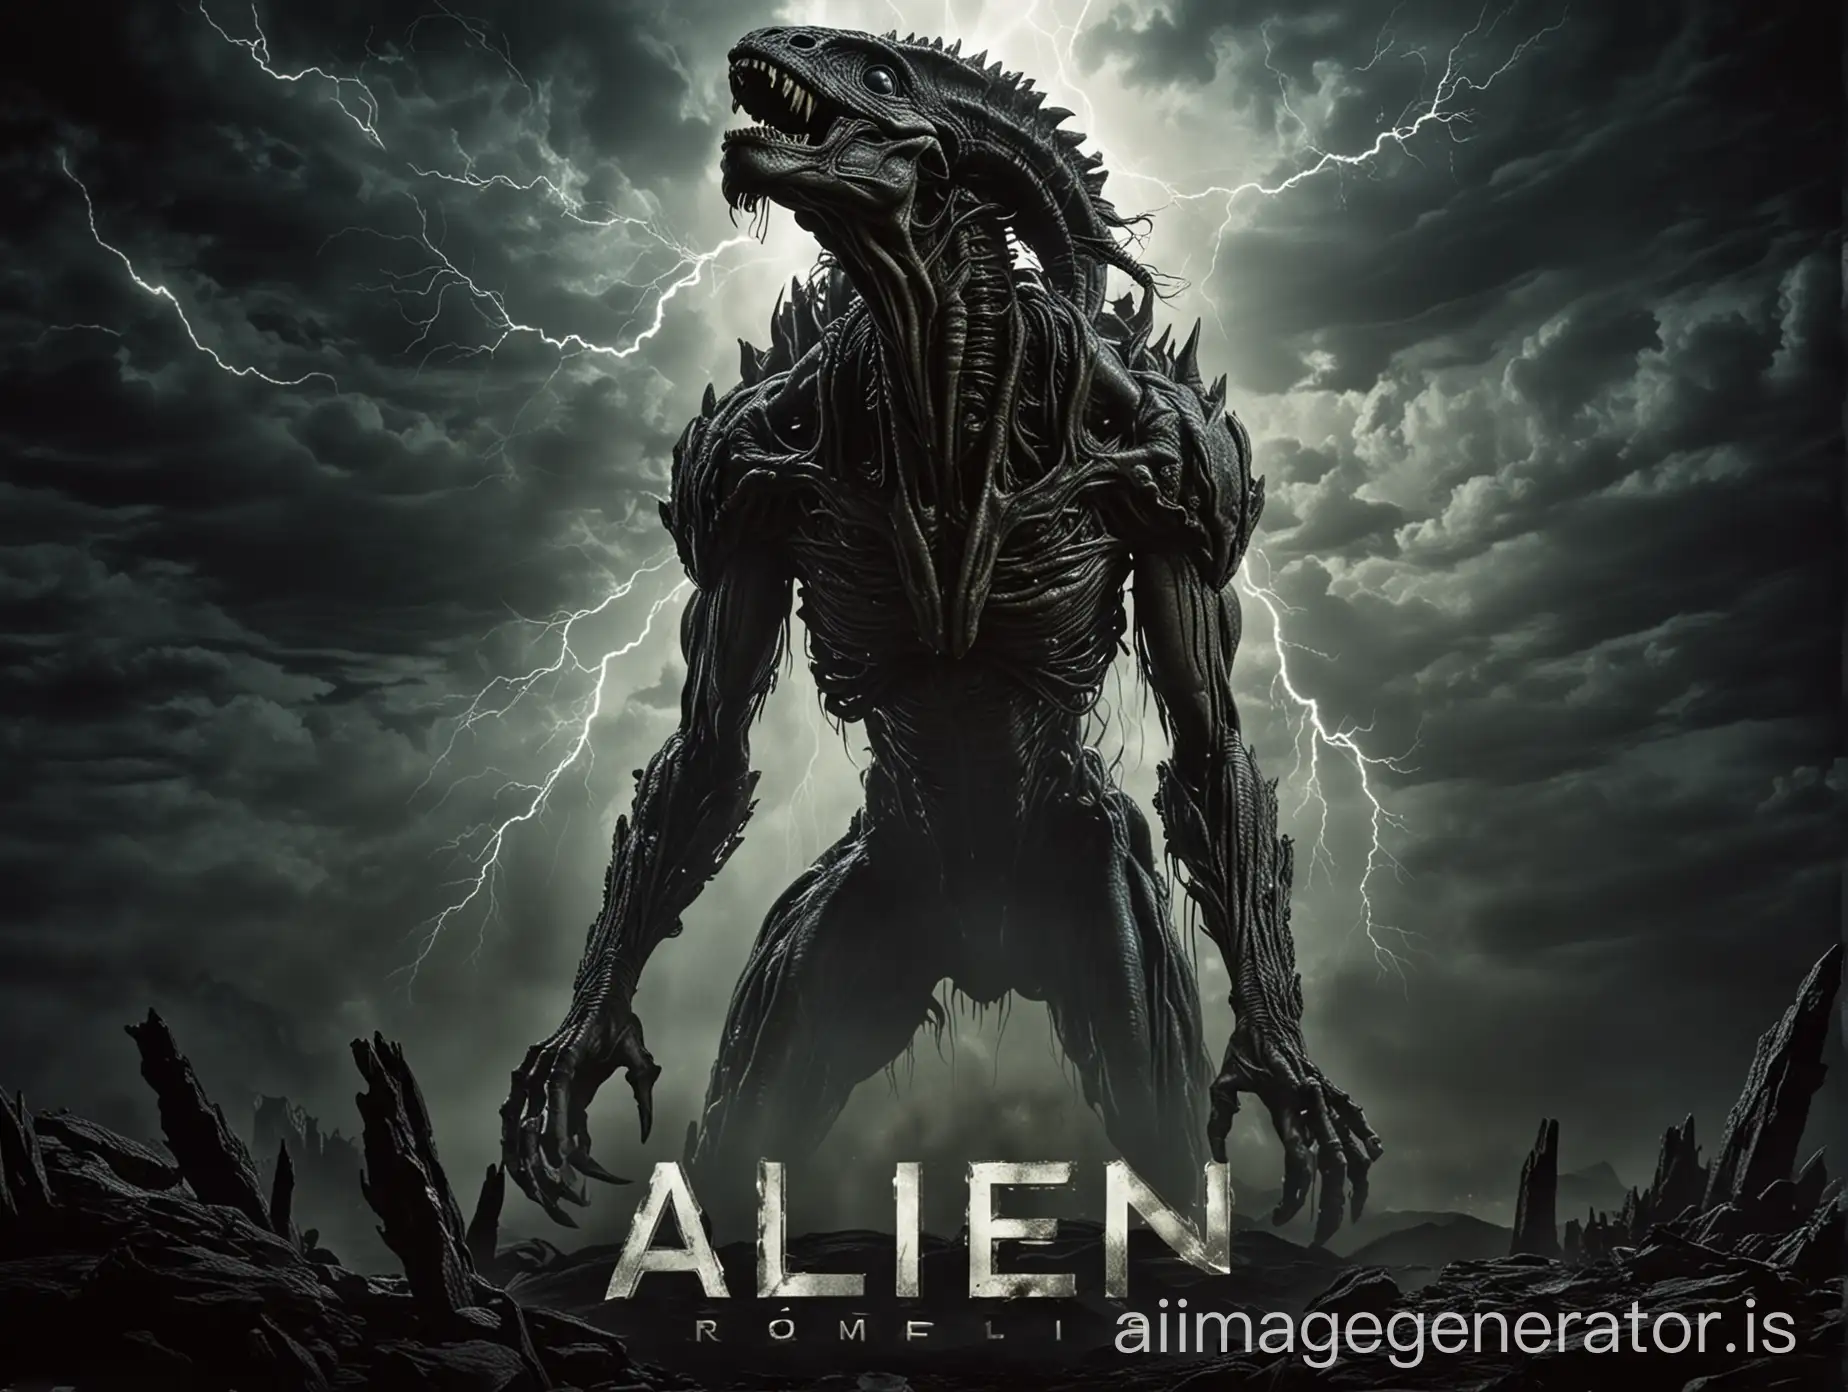 Alien: Romulus movie poster, large monster, dark background, lightning